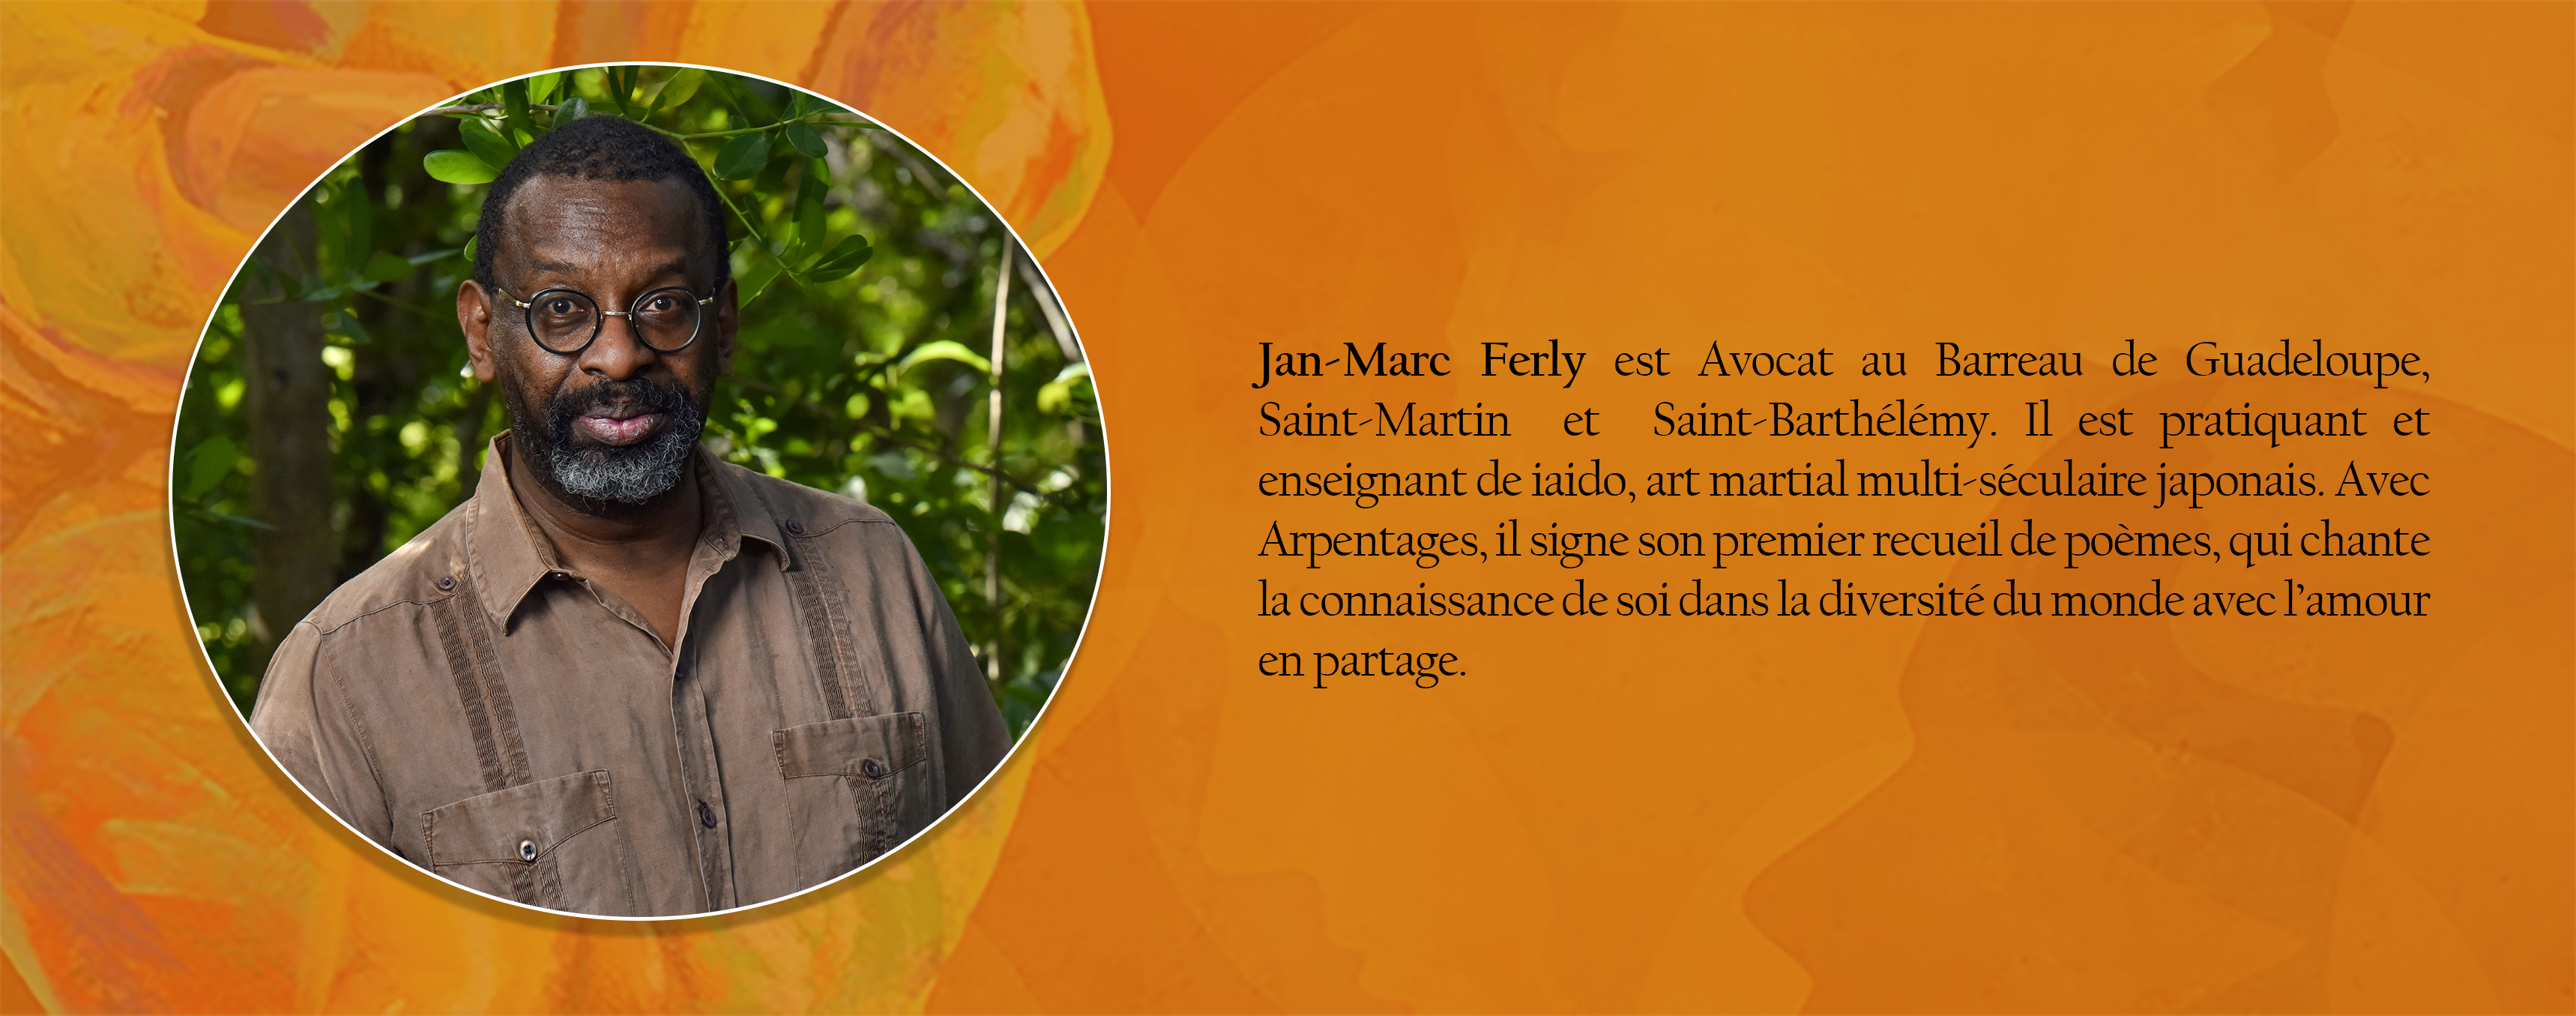 FERLY Jan-Marc